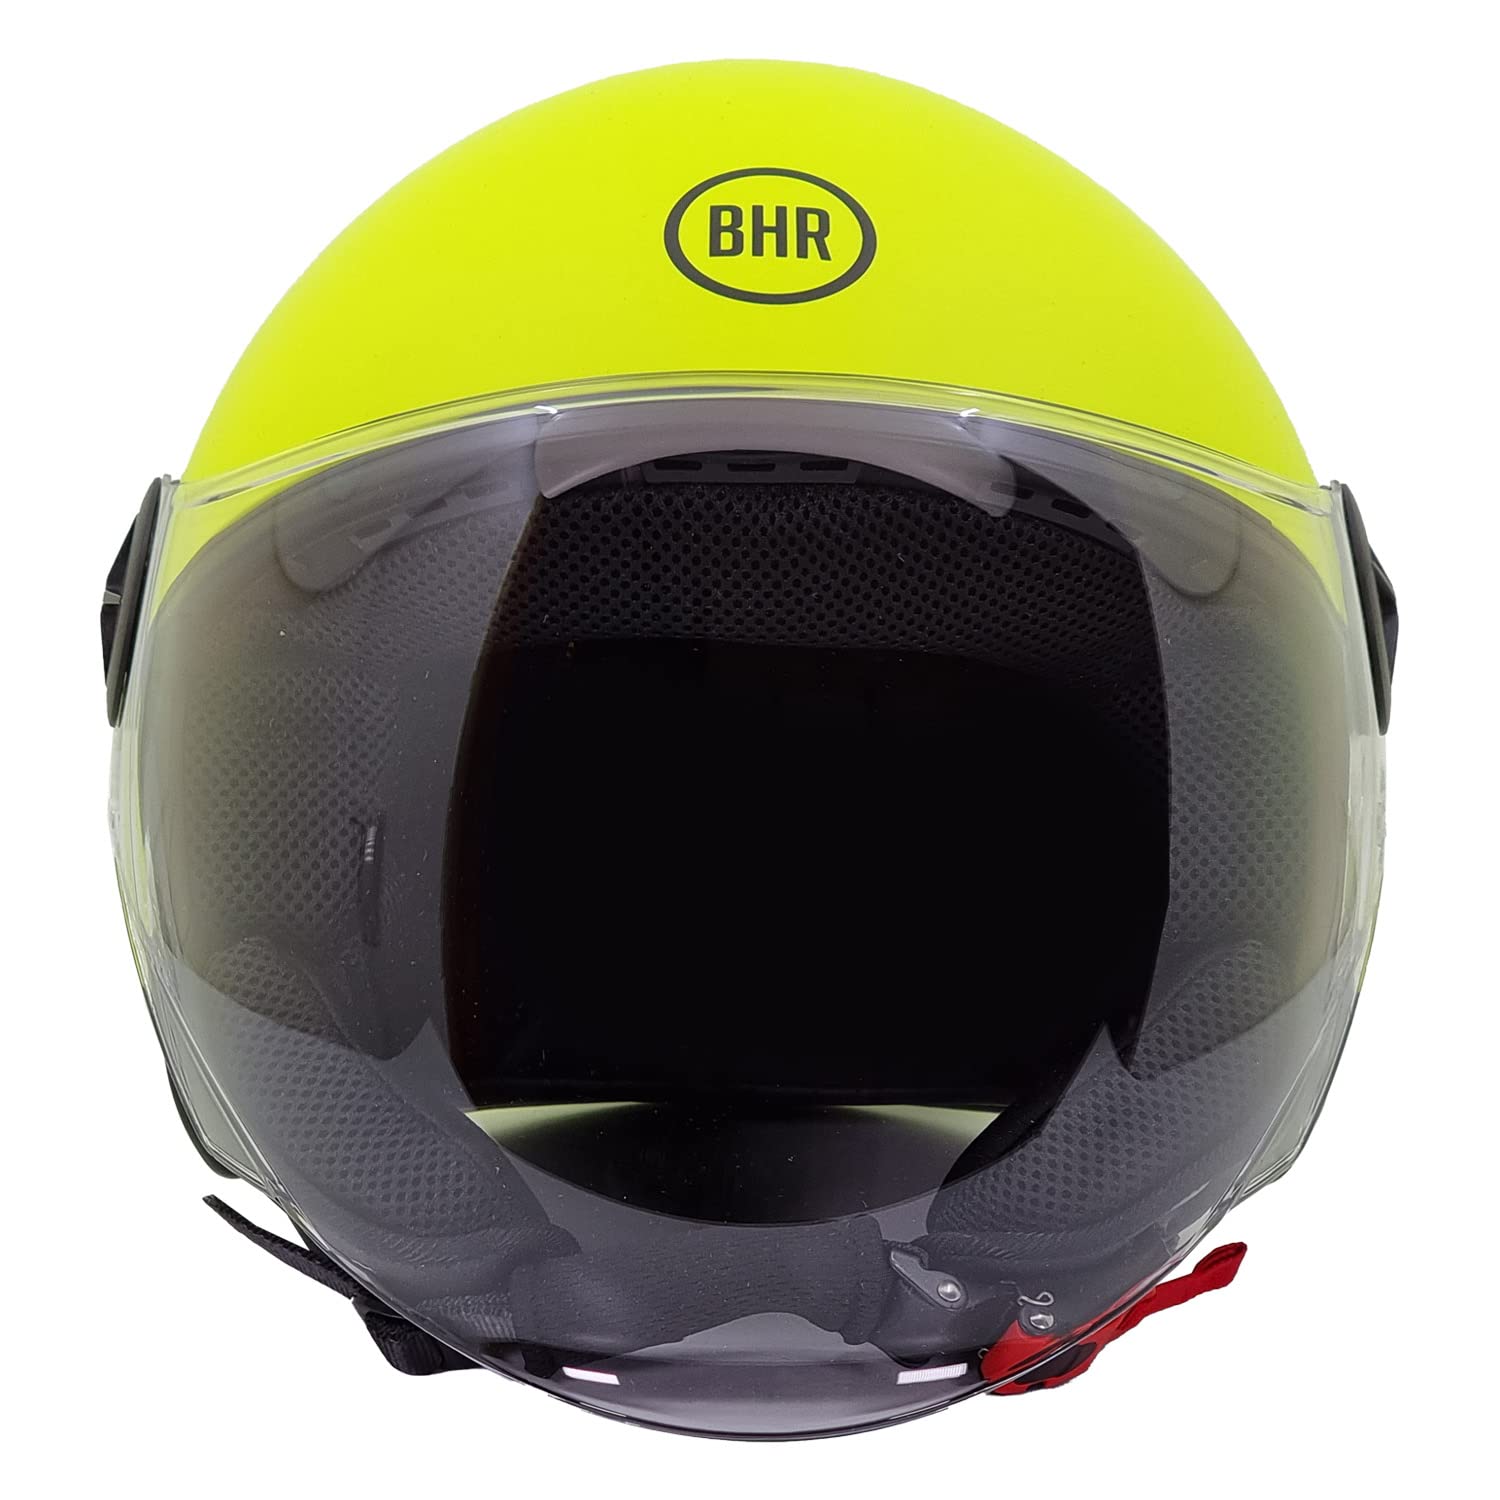 BHR Helm Demi-Jet 832 MINIMAL, Scooter Helm Zulassung ECE 22.06 Leicht und kompakt, ideal für die Stadt und unter der Sitzbank, Fluo gelb (Matt), M von BHR